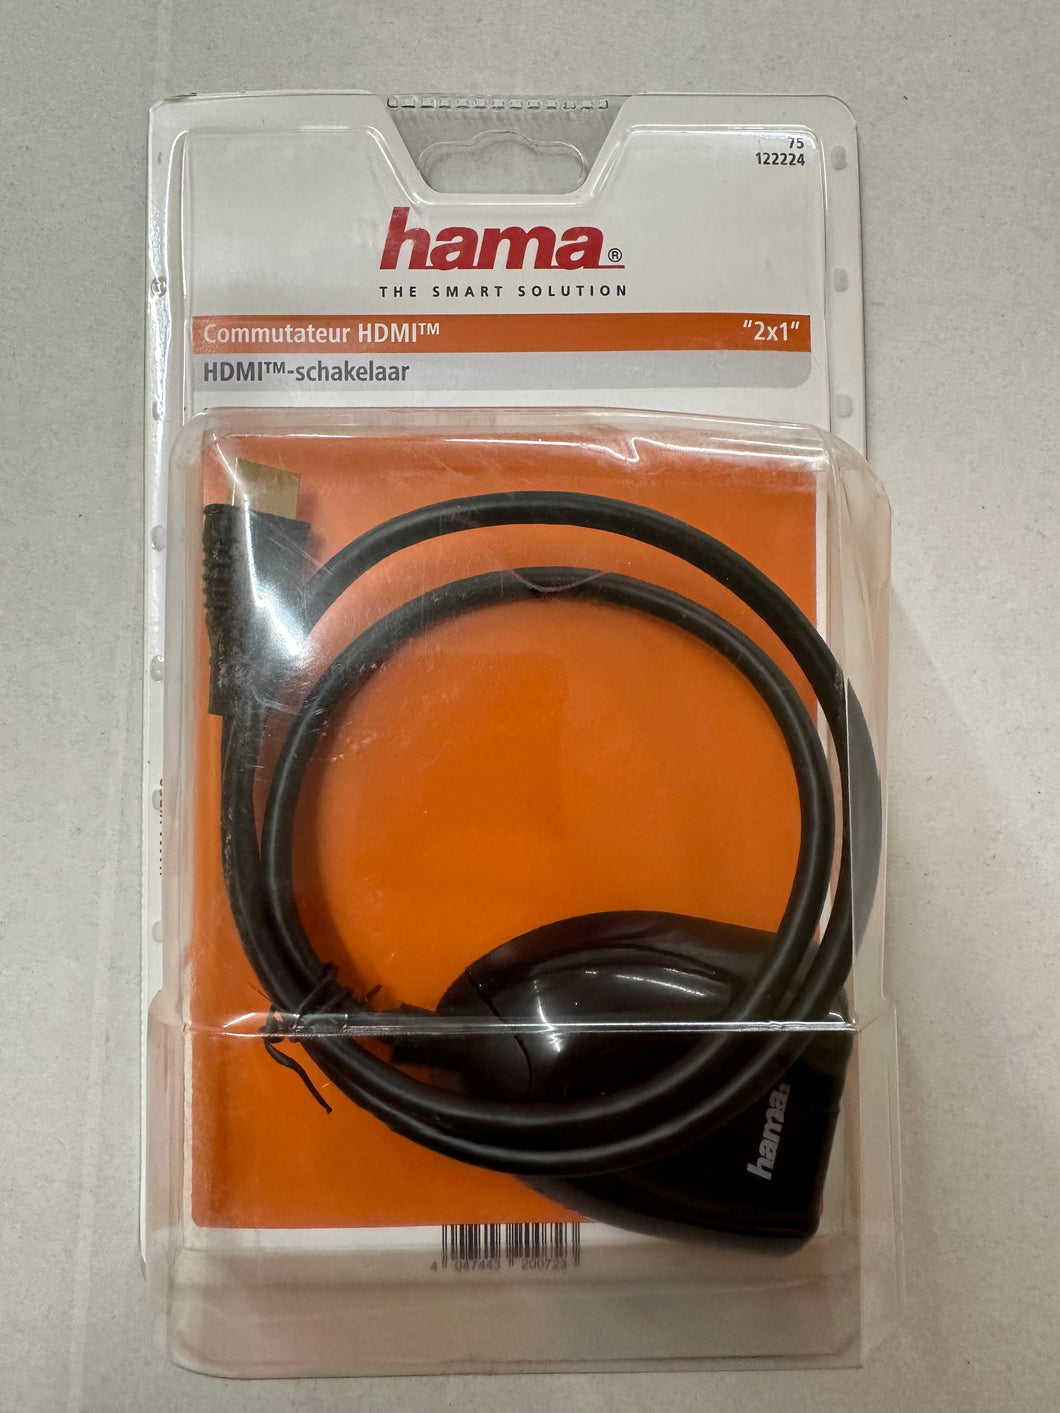 Hama 75122224 HDMI Switch 2 x 1 schwarz